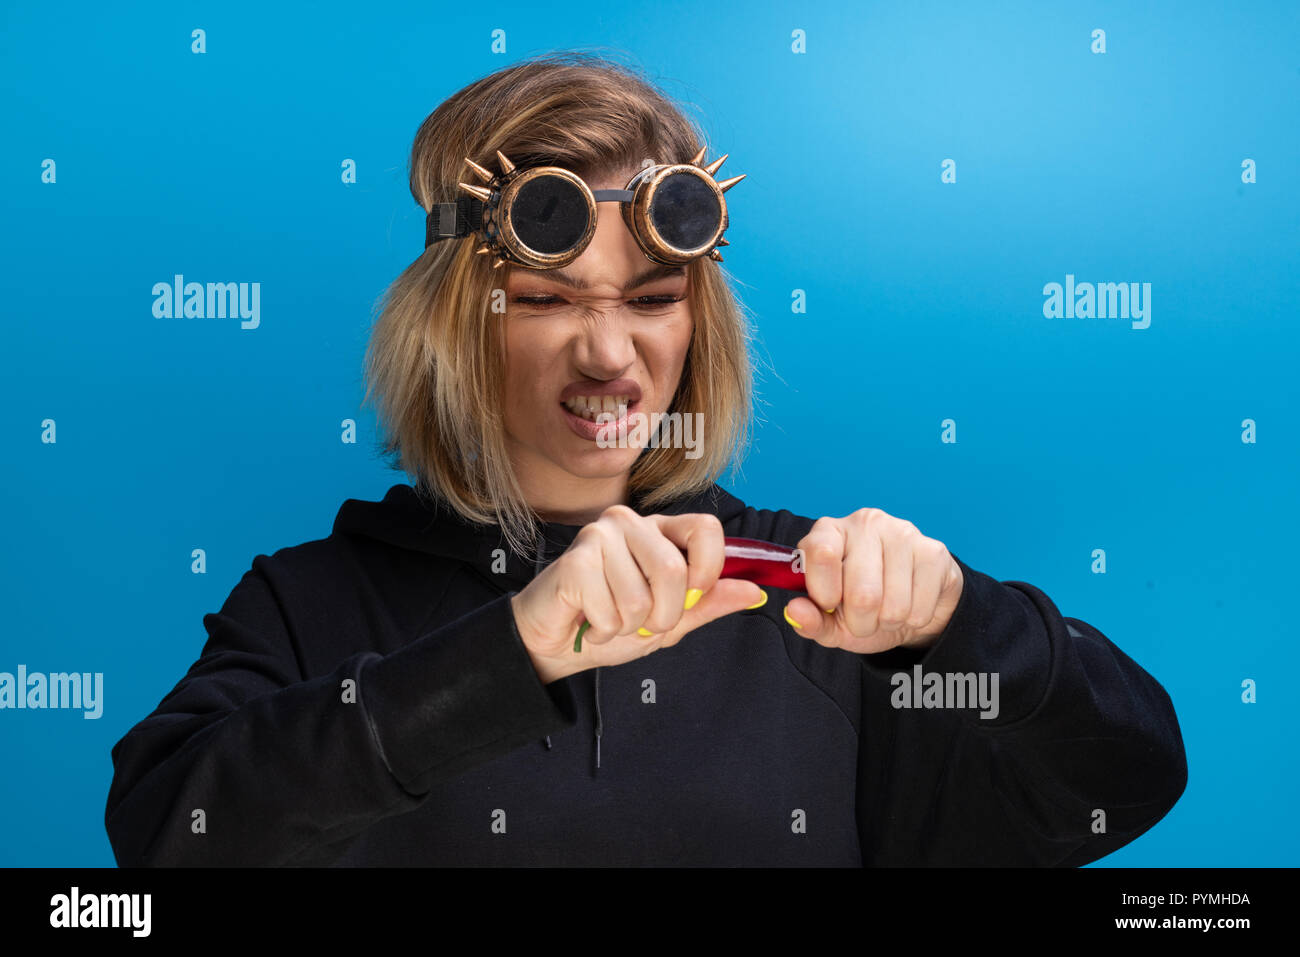 Mädchen mit Steam Punk Brille reißen eine rote Chili, während sie wütend. Portraitfotos im Studio vor blauem Hintergrund Stockfoto